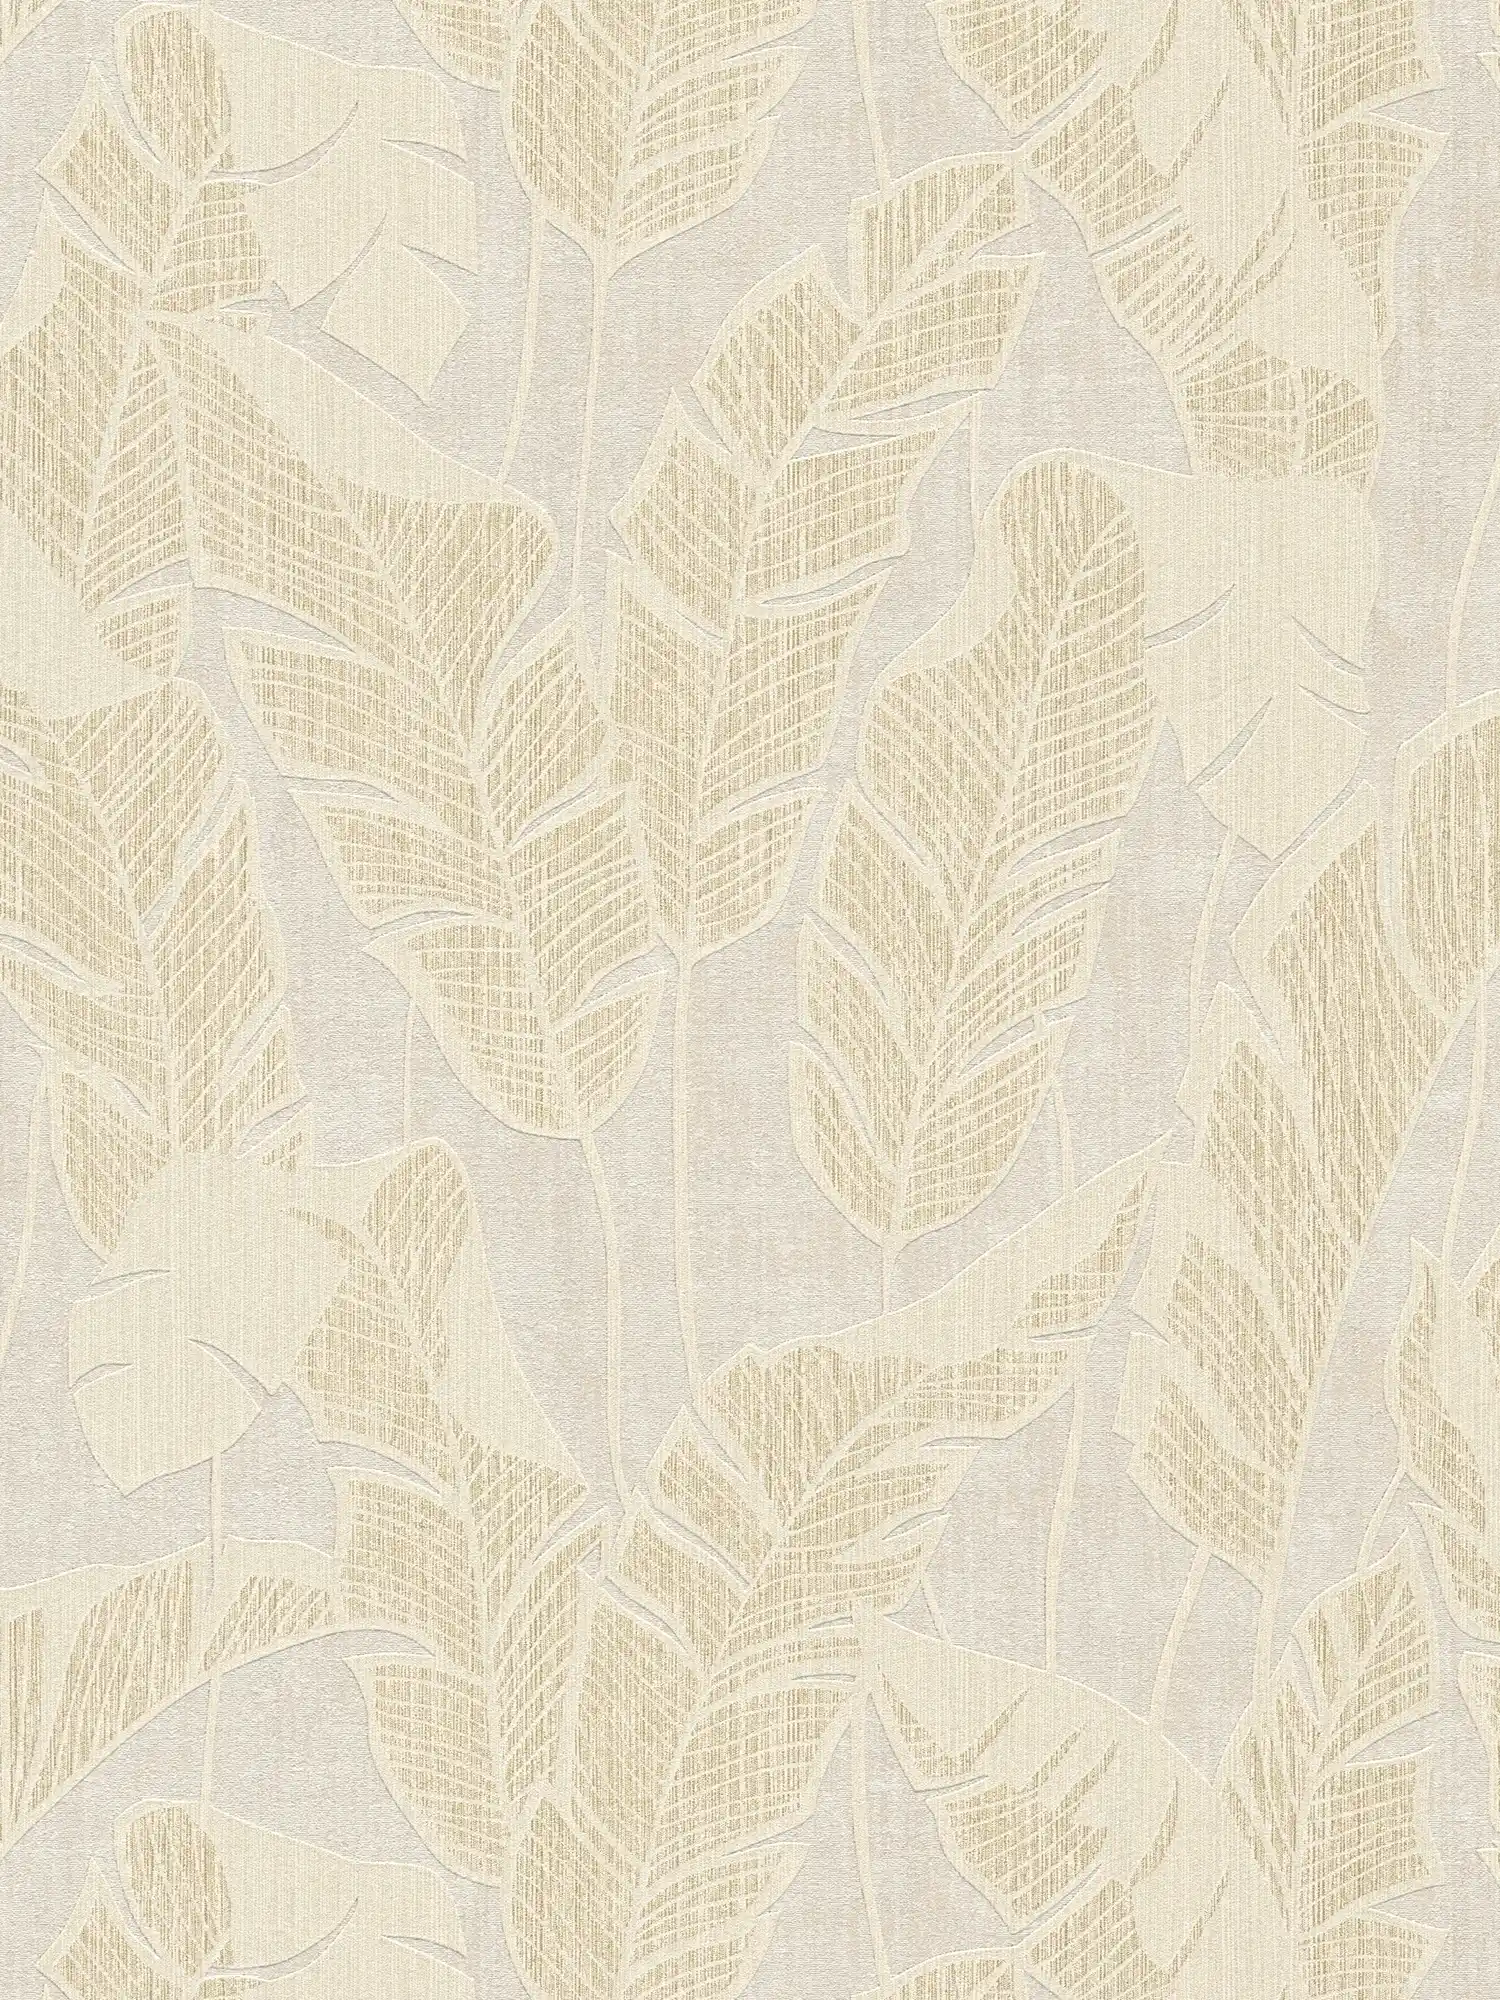 Onderlaag behang met junglepatroon in zachte kleuren - wit, beige, goud
